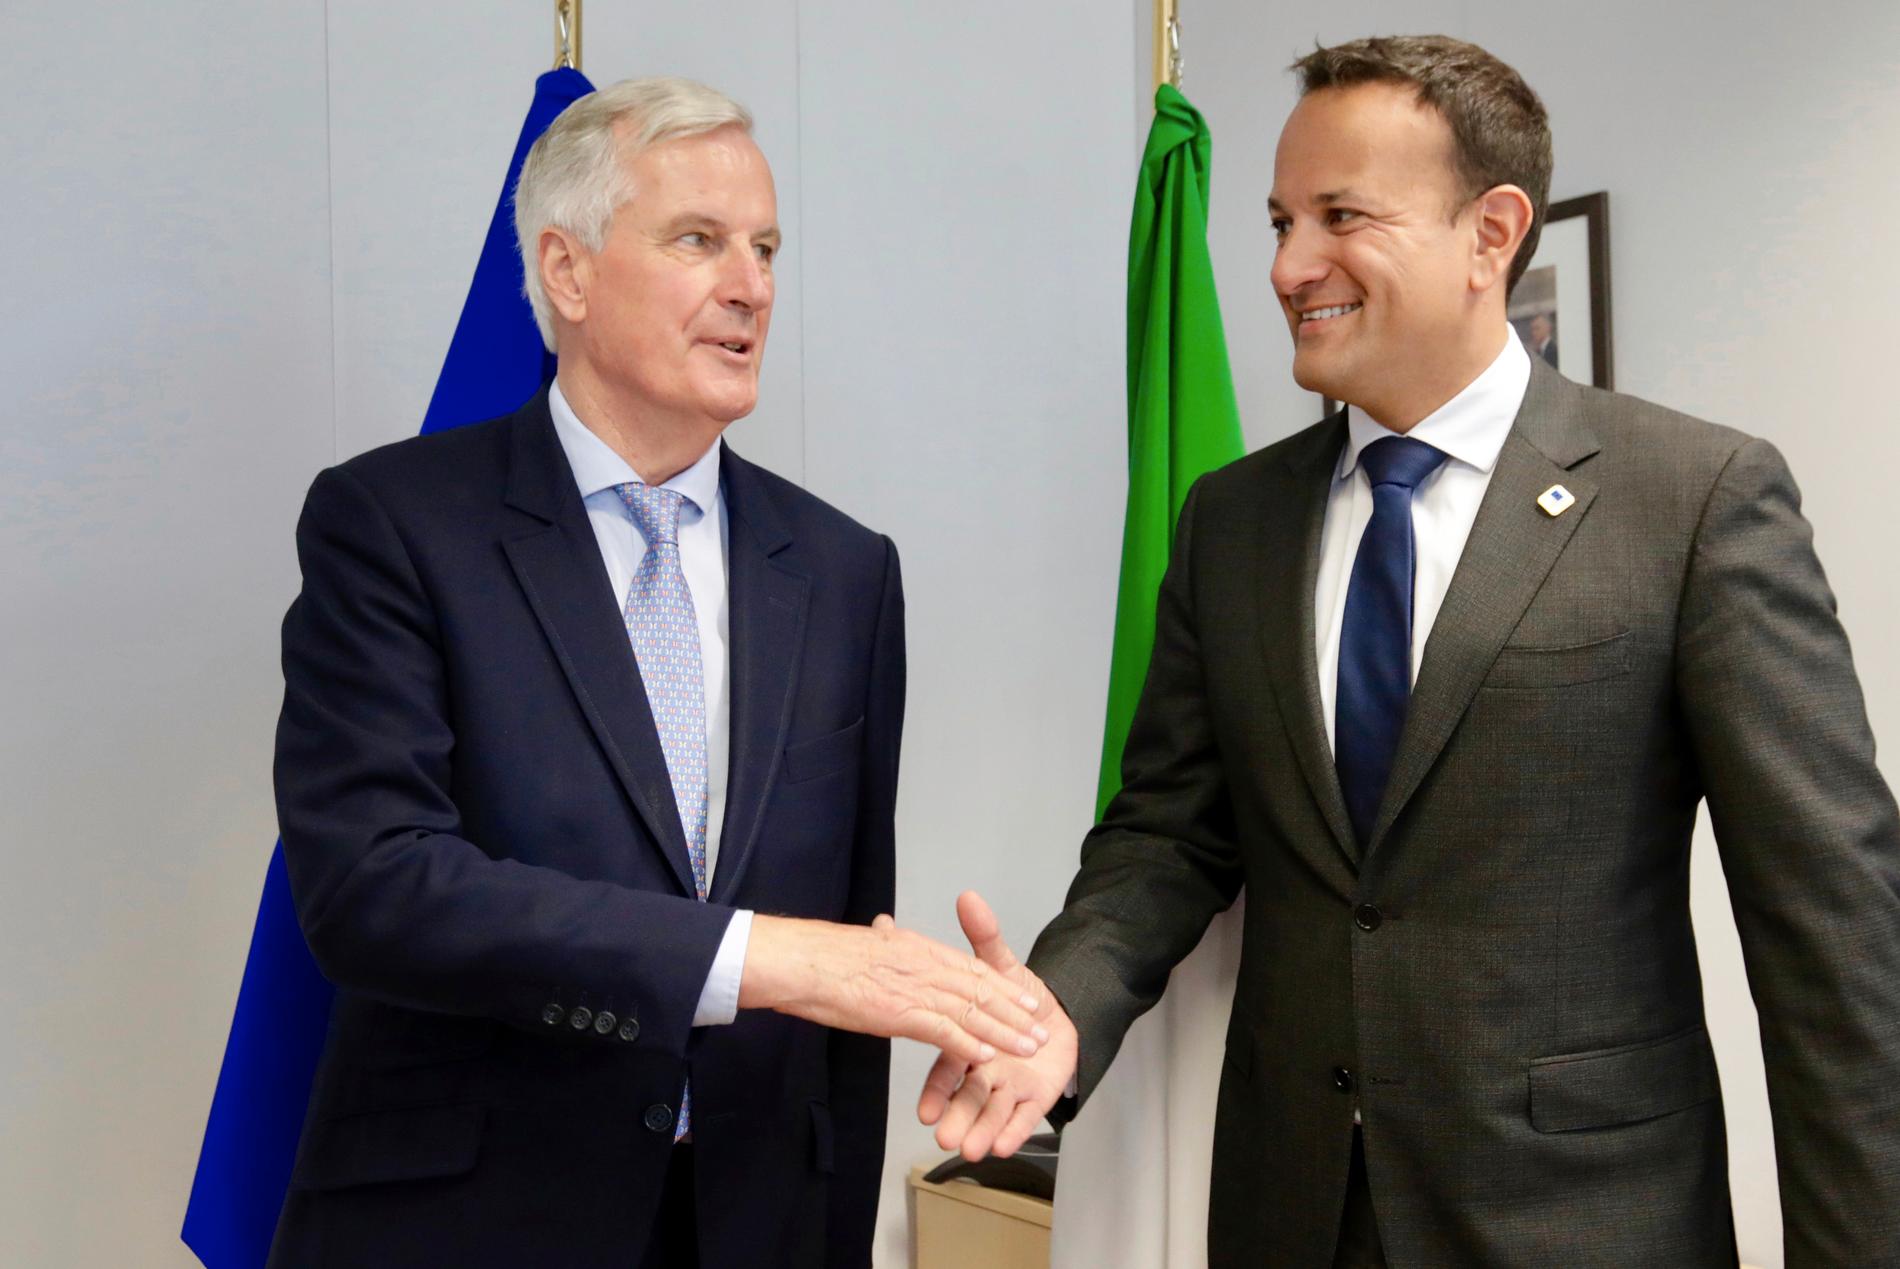 Franske brexitförhandlaren Michel Barnier och irländske premiärministern Leo Varadkar nämns flitigt i spekulationerna om olika toppjobb i EU. Arkivbild.